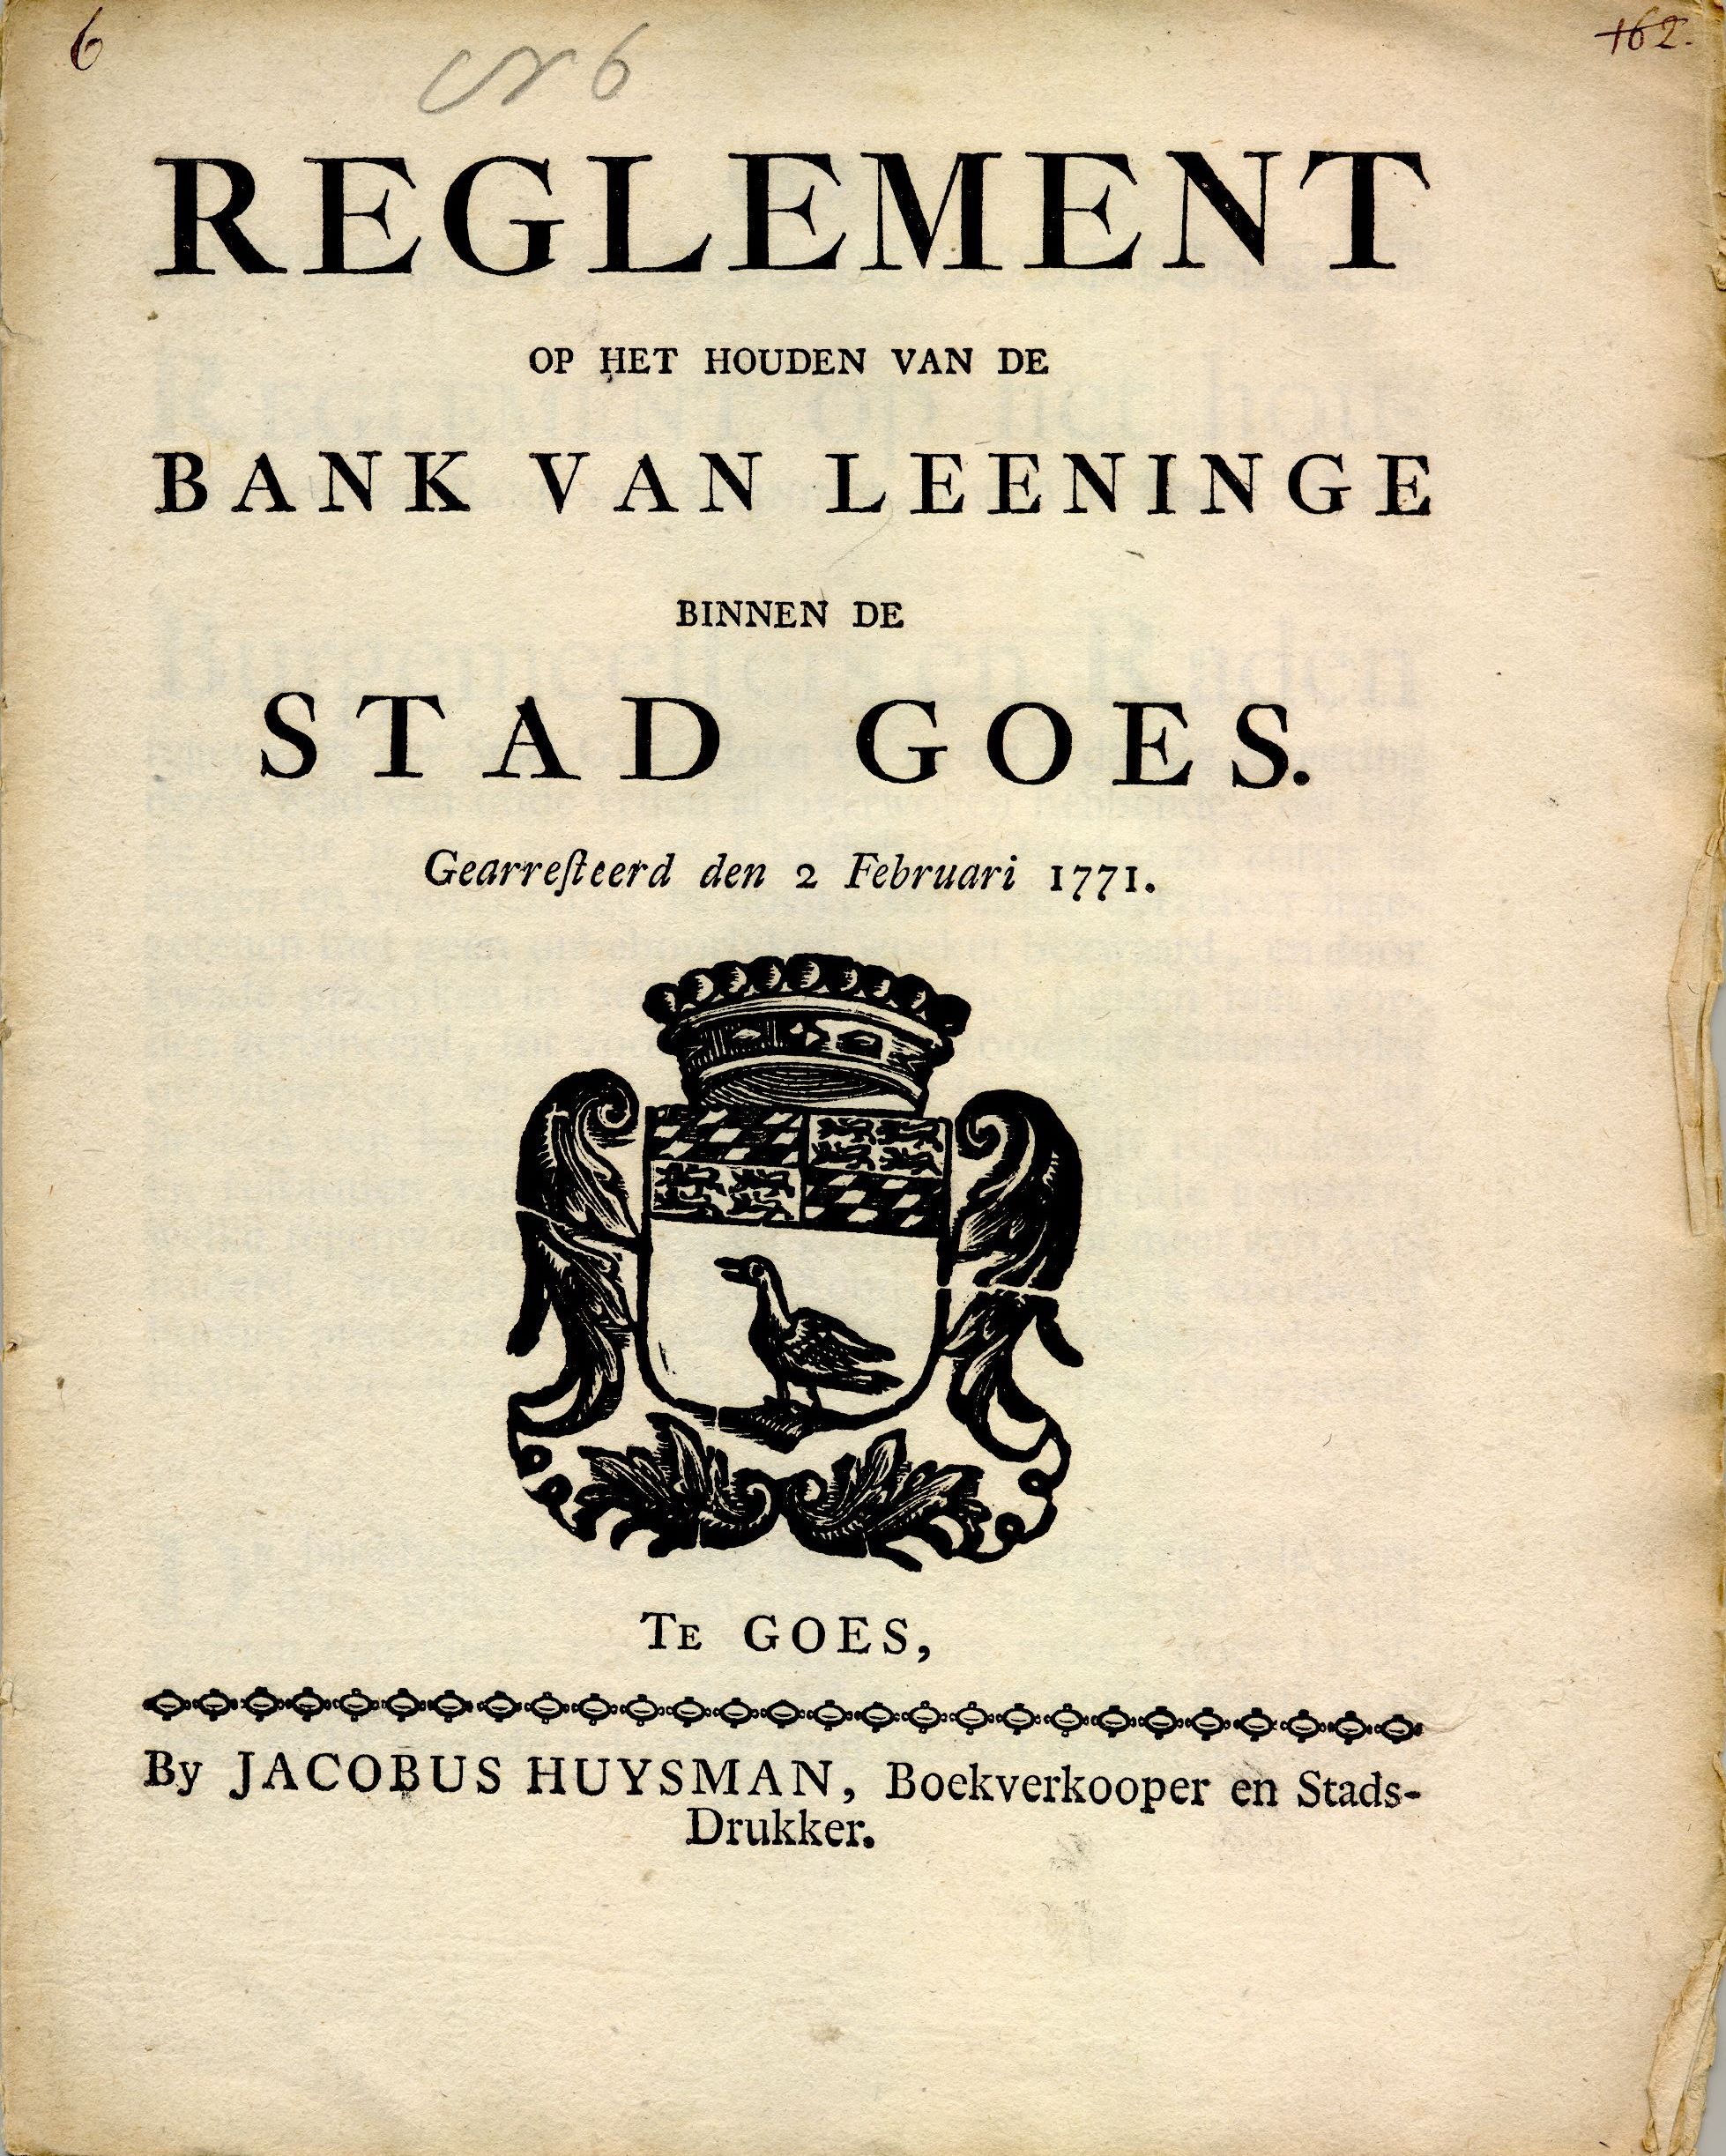 Reglement op de bank van lening, 1771.